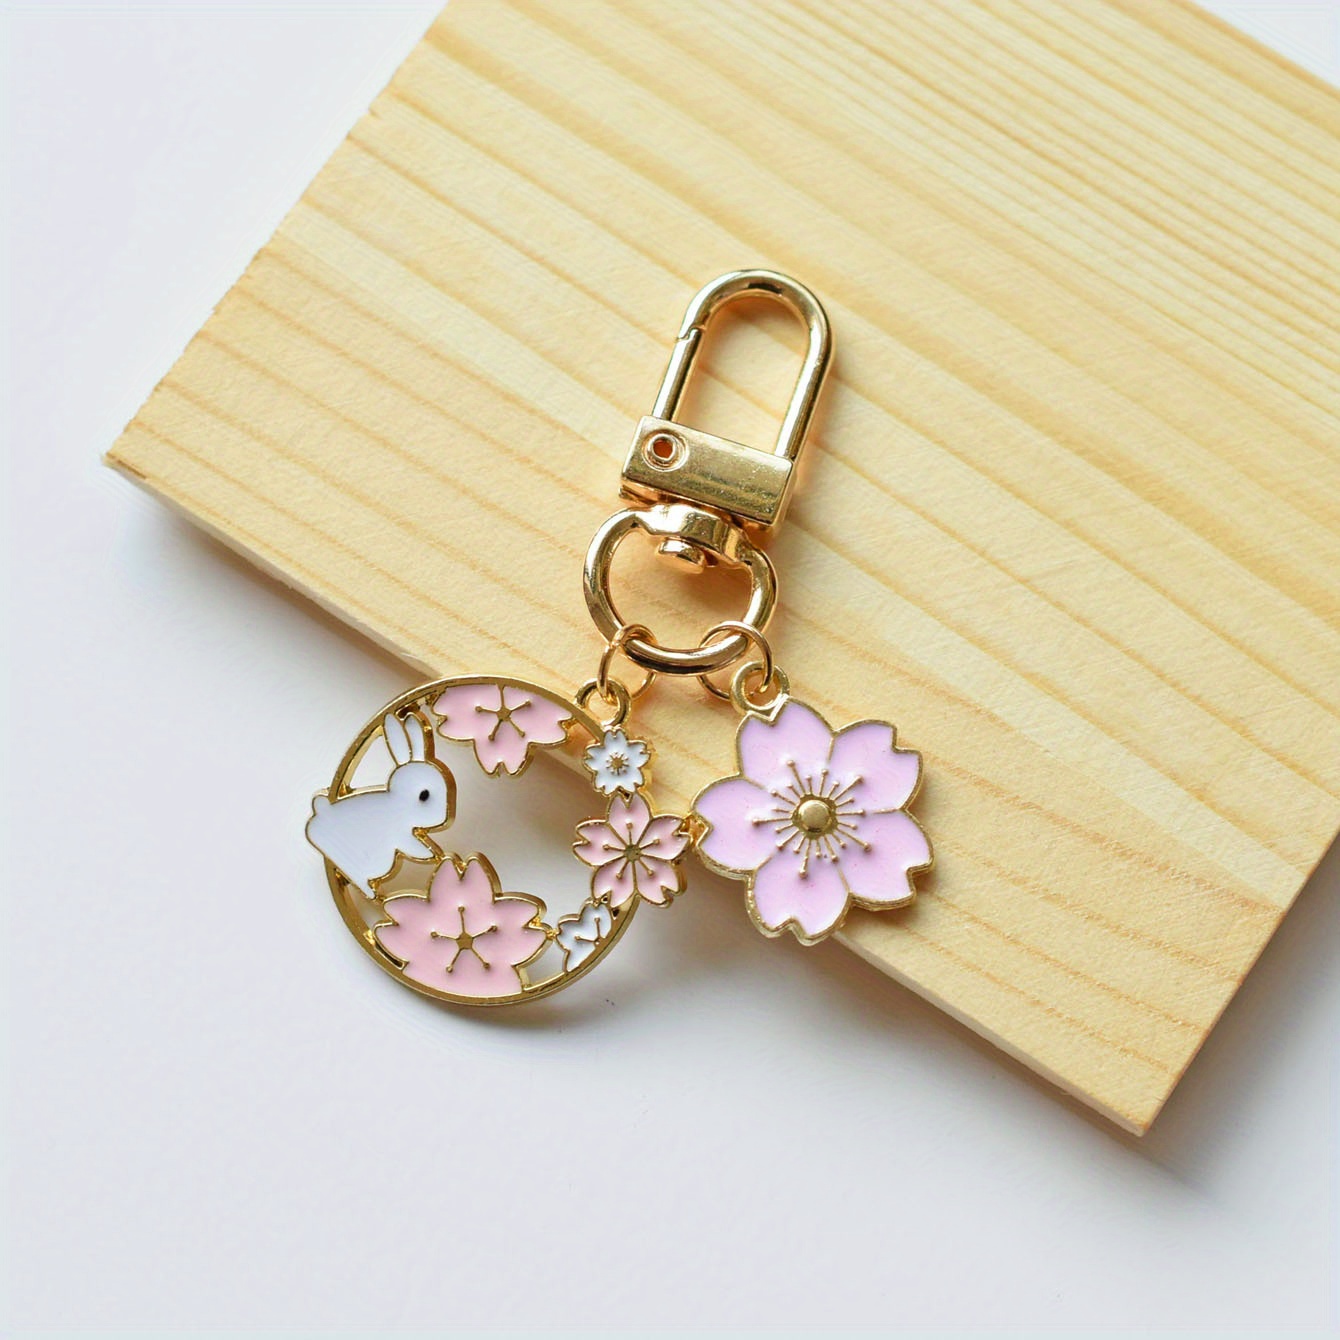 Cute Enamel Keychain Flower Fox Key Ring Animal Key Chains